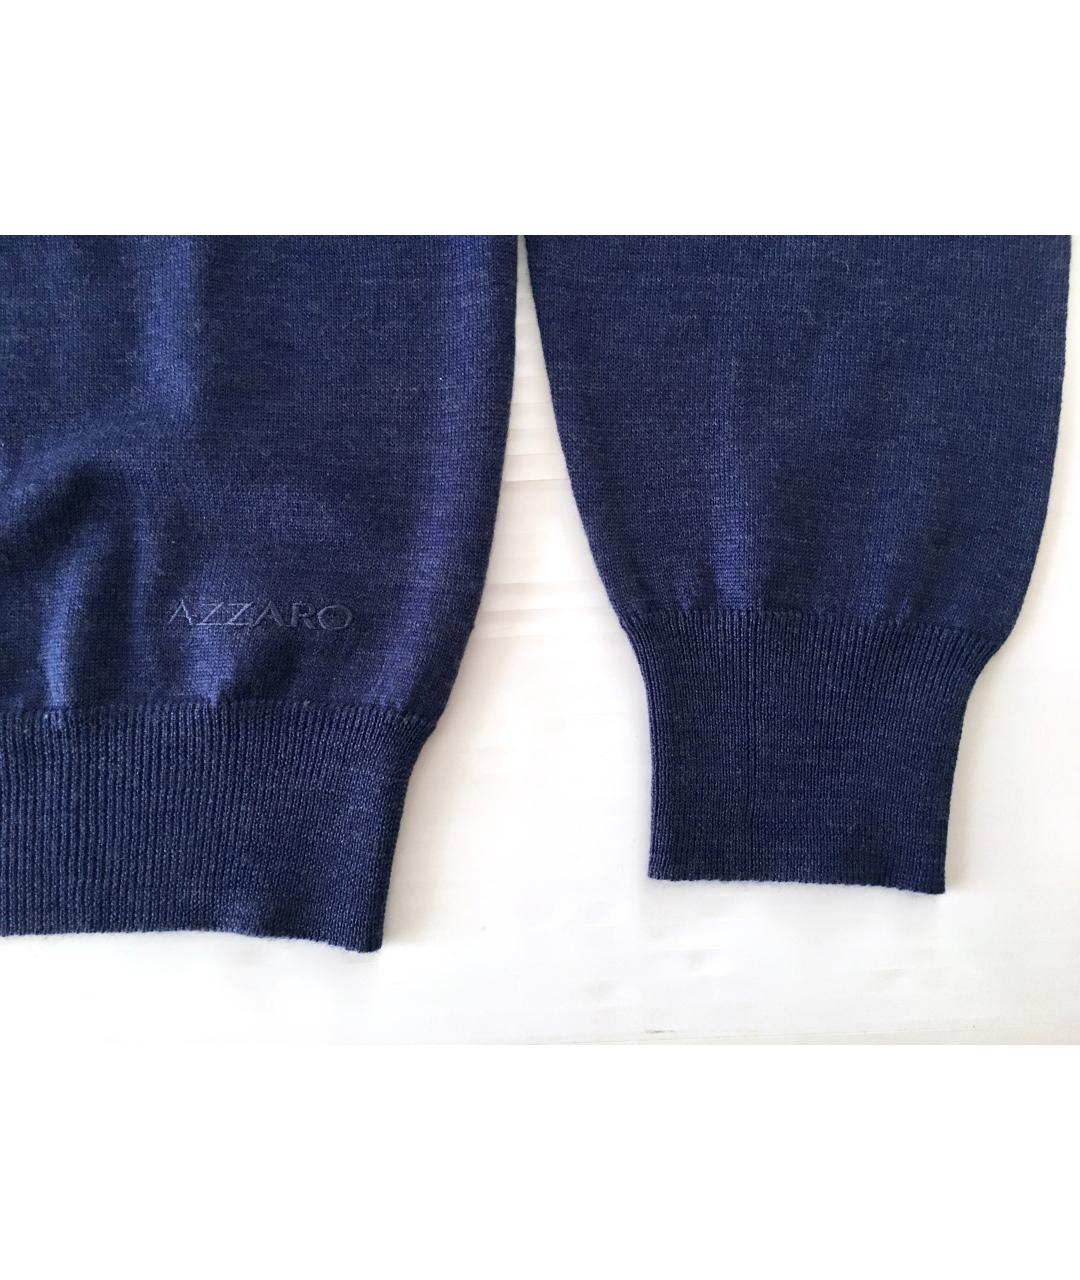 AZZARO Синий шерстяной джемпер / свитер, фото 4